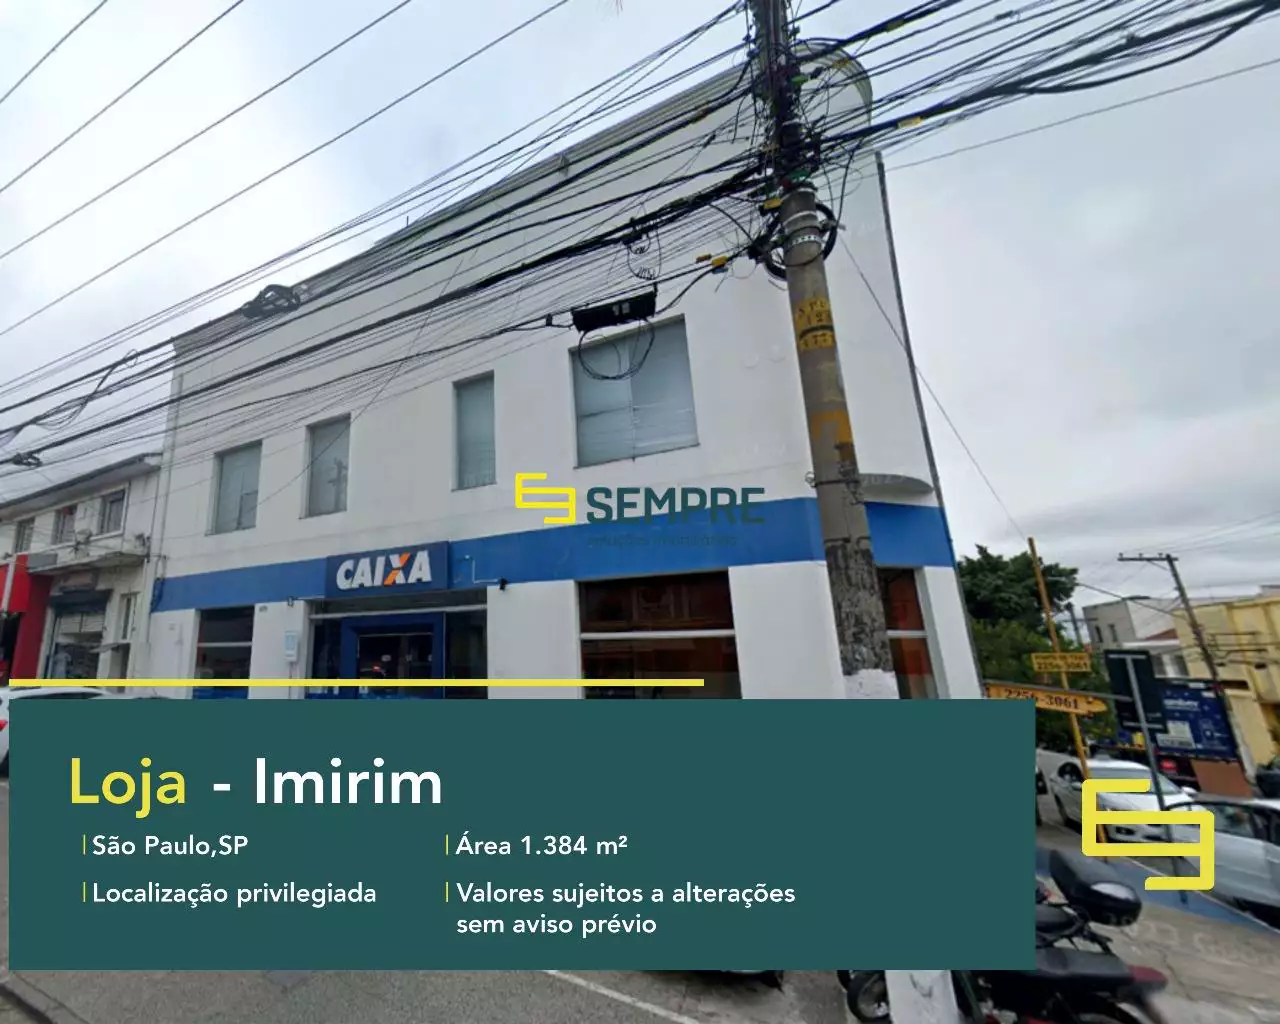 Loja para alugar no Imirim em São Paulo, excelente localização. O estabelecimento comercial conta com área de 1.384 m².